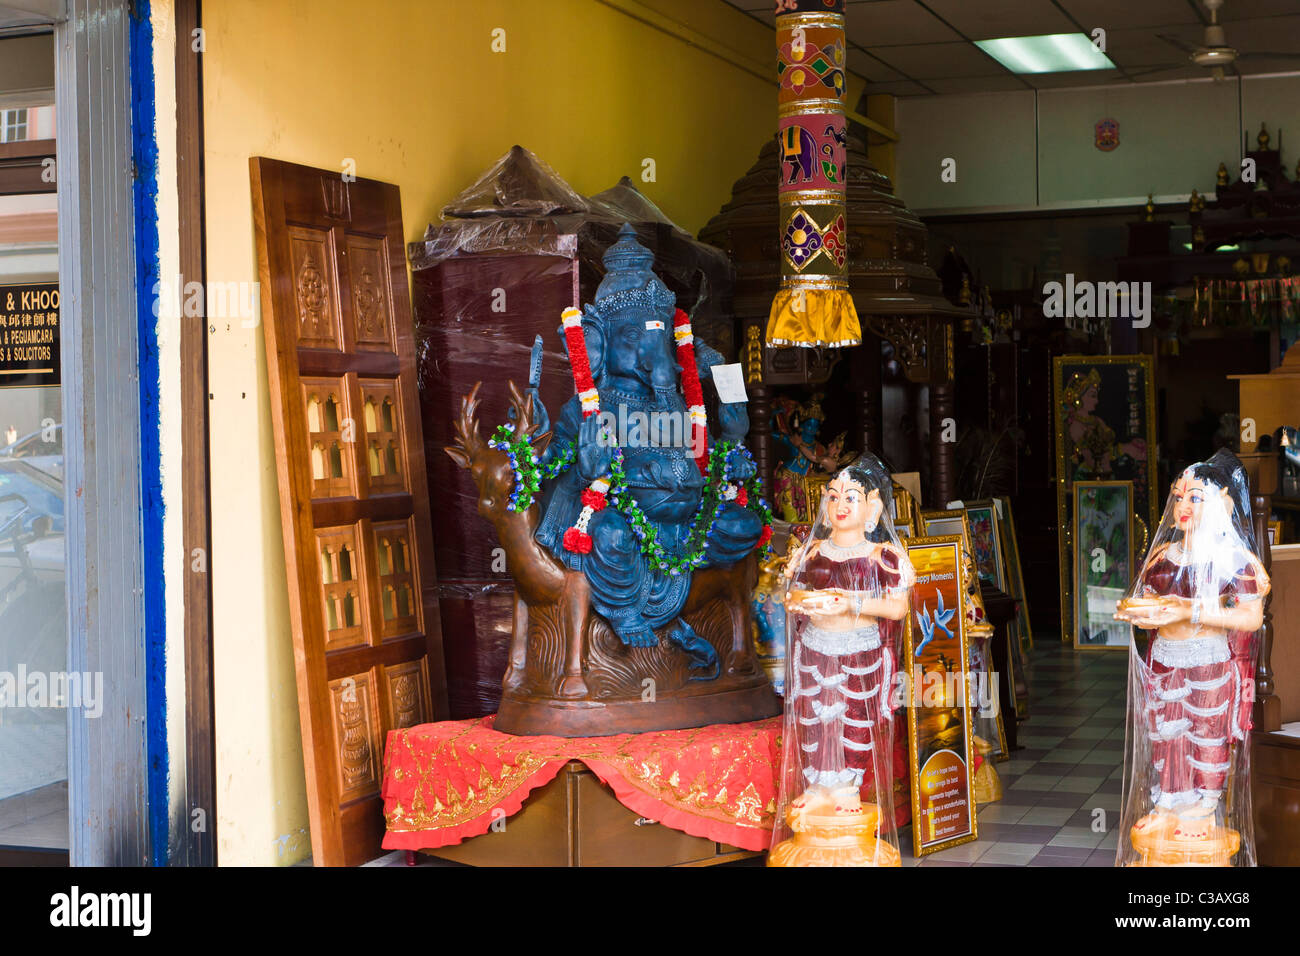 Une statue du dieu Ganesh et autres sculptures sur bois dans une boutique de Malaisie Banque D'Images